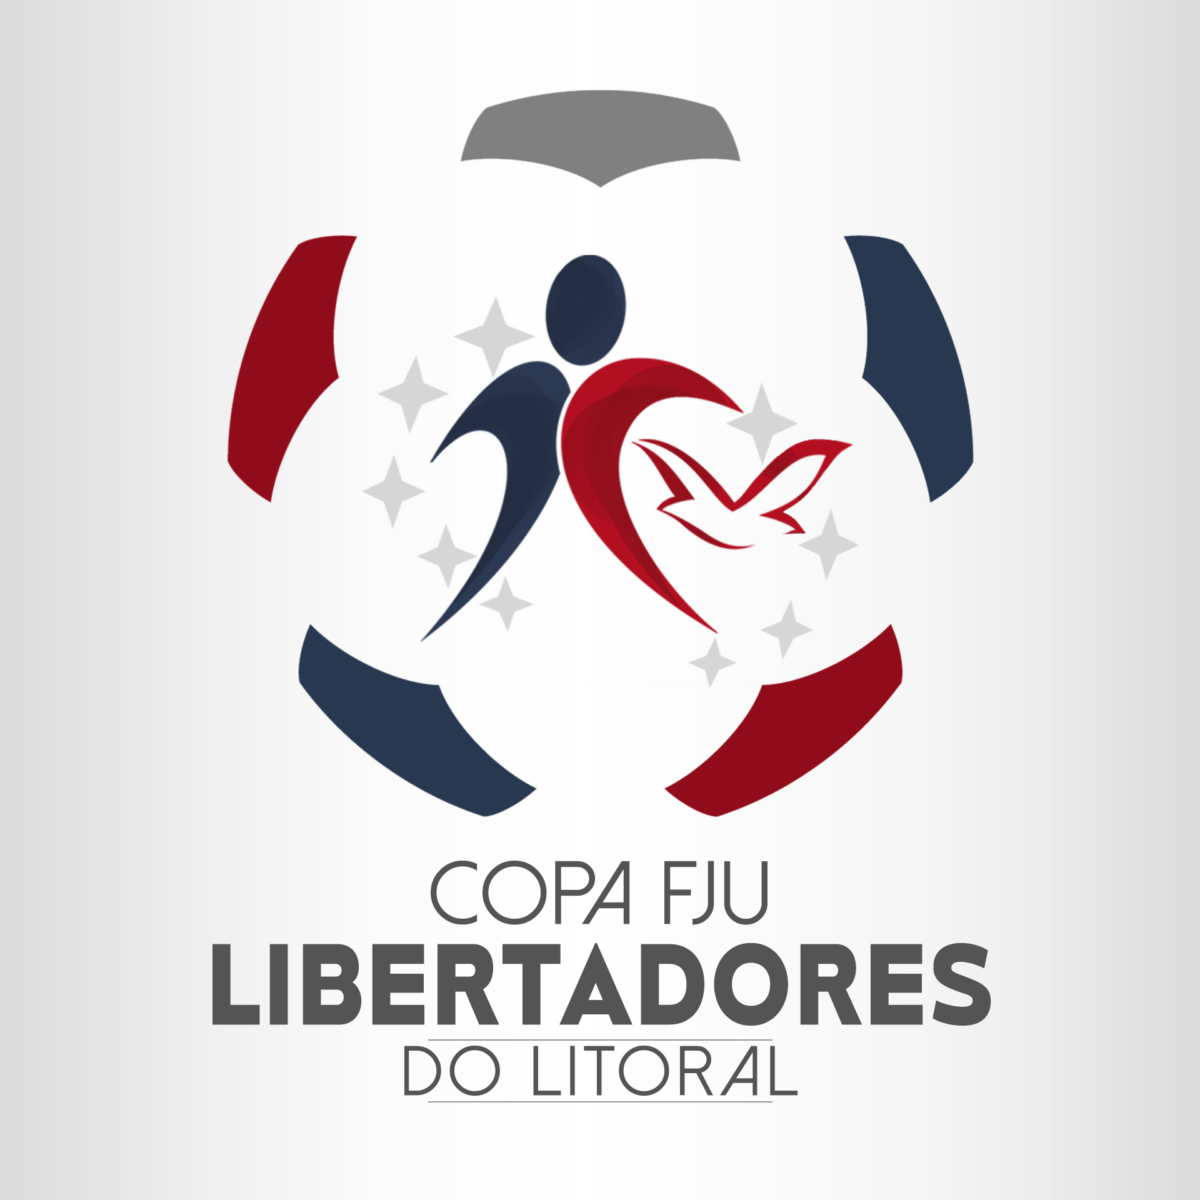 Copa FJU Libertadores do Litoral inicia neste domingo